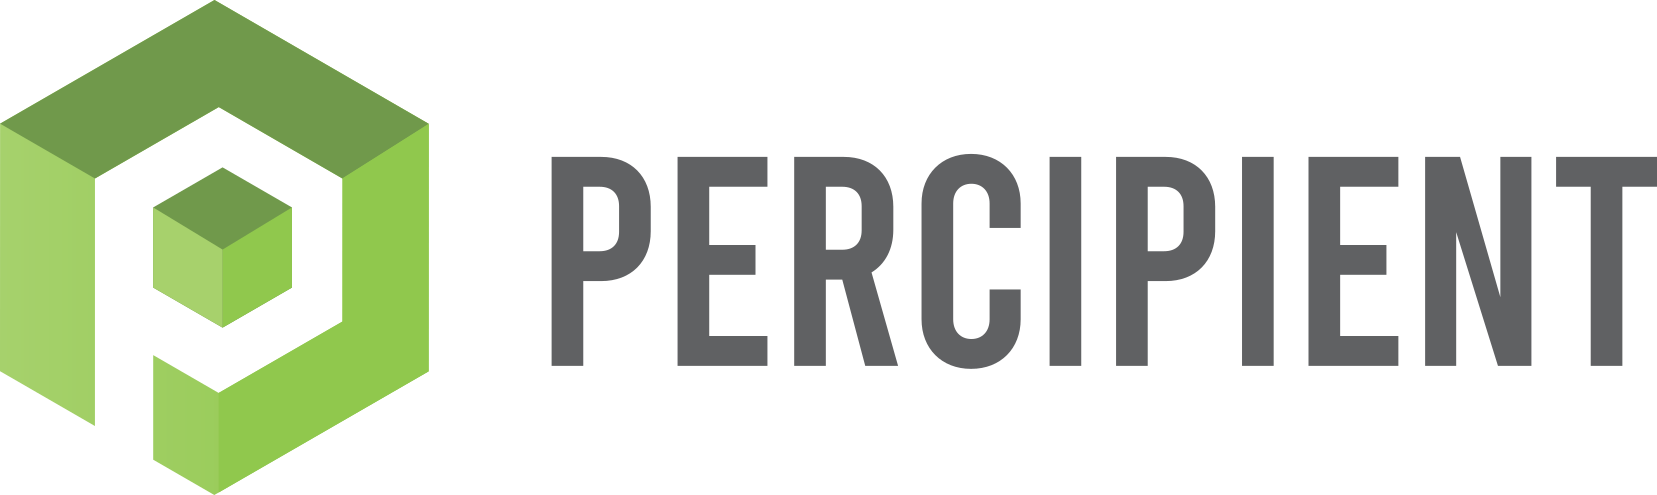 Percipient Logo